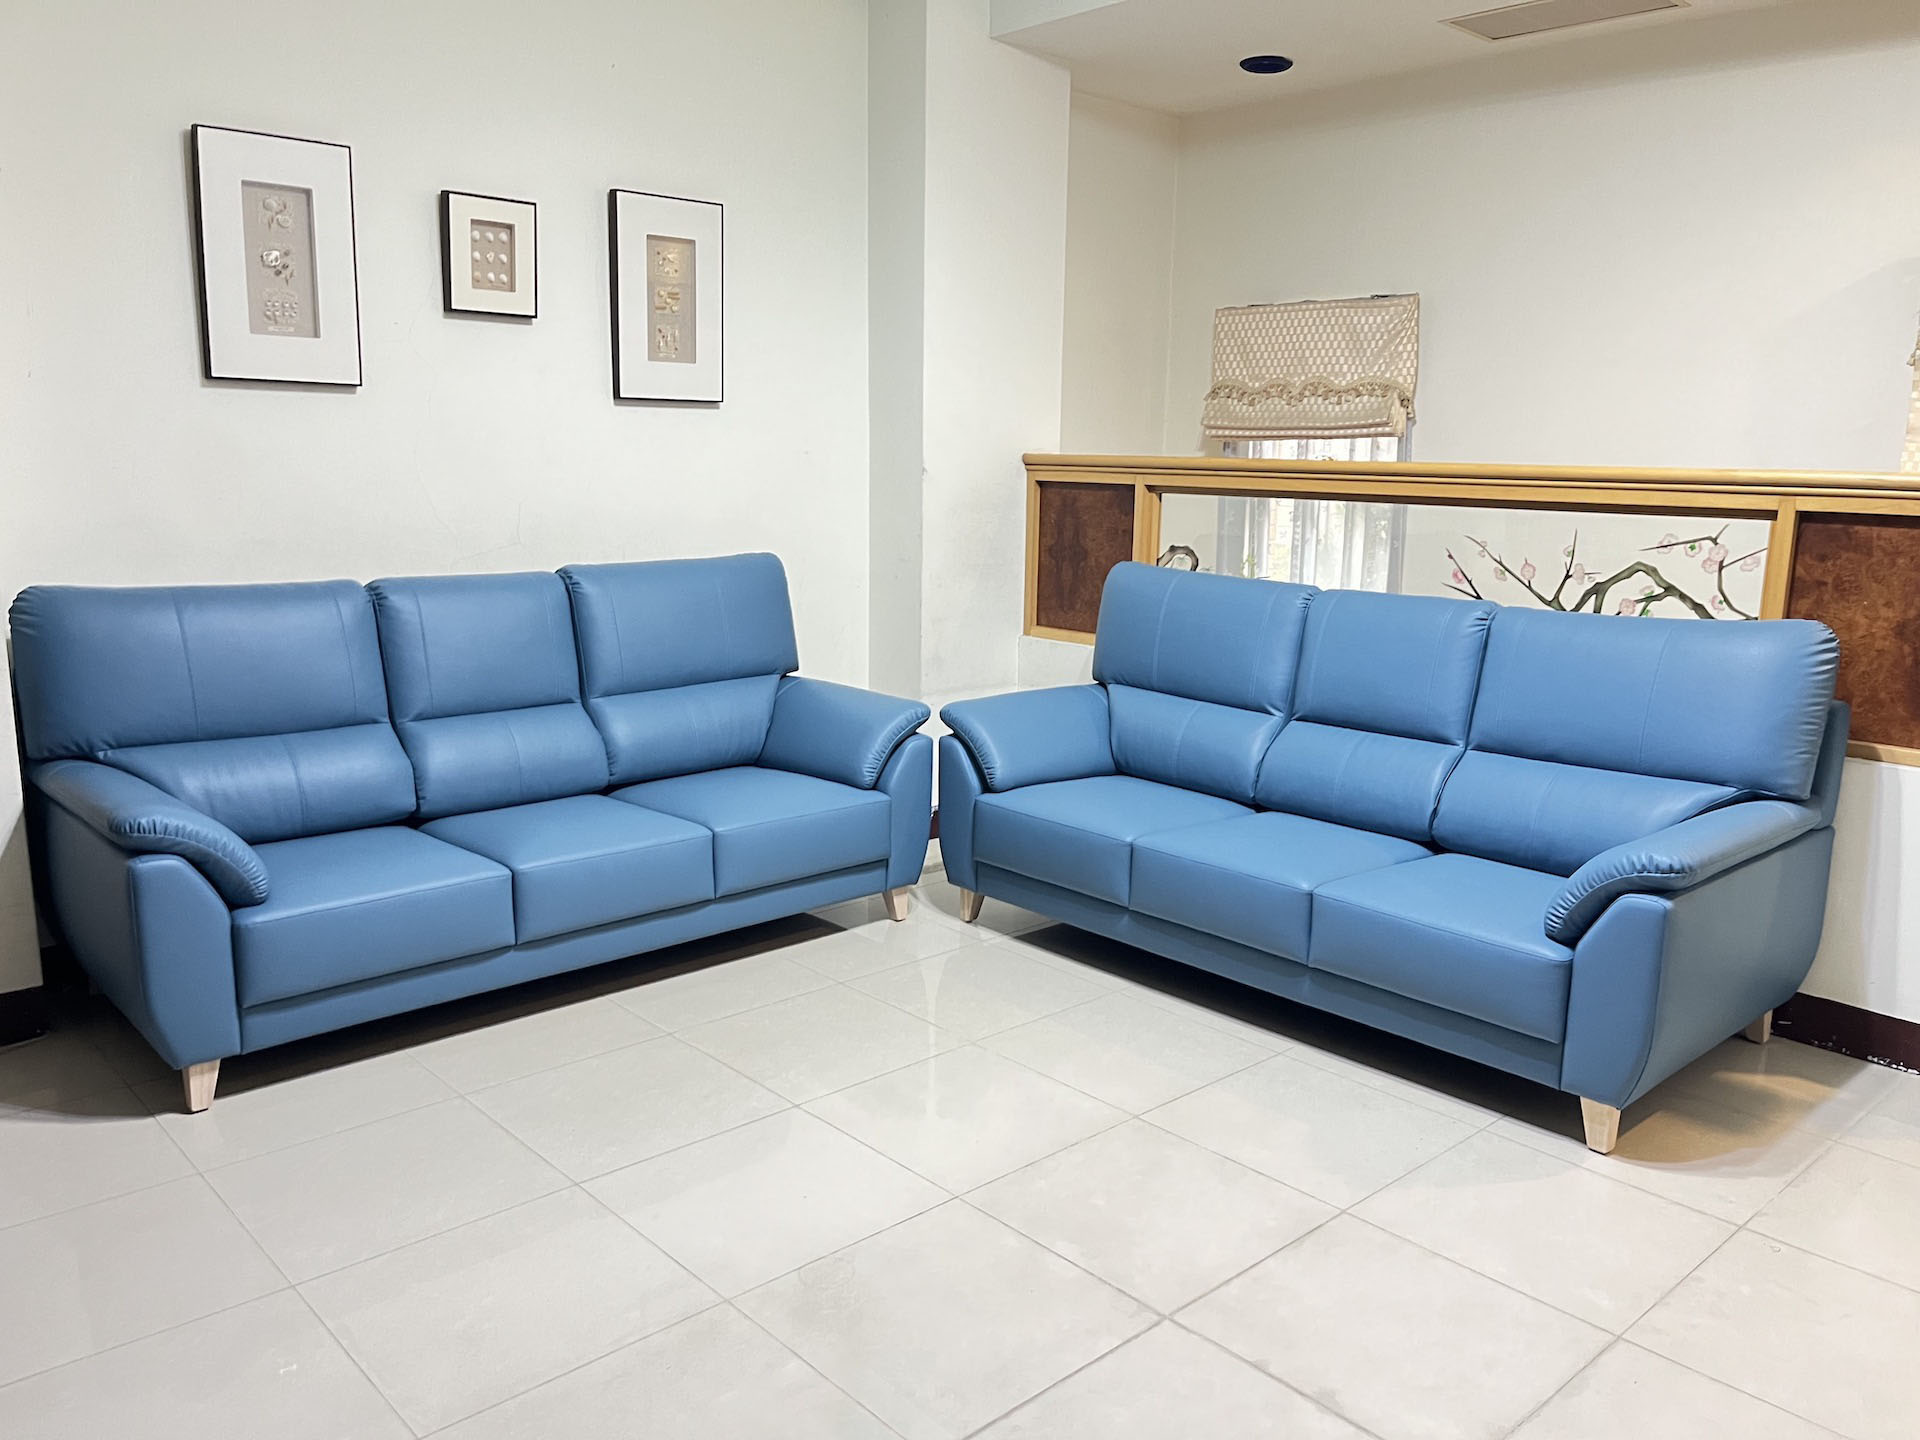 【客戶案例分享】台中太平兩座三人座沙發訂製分享